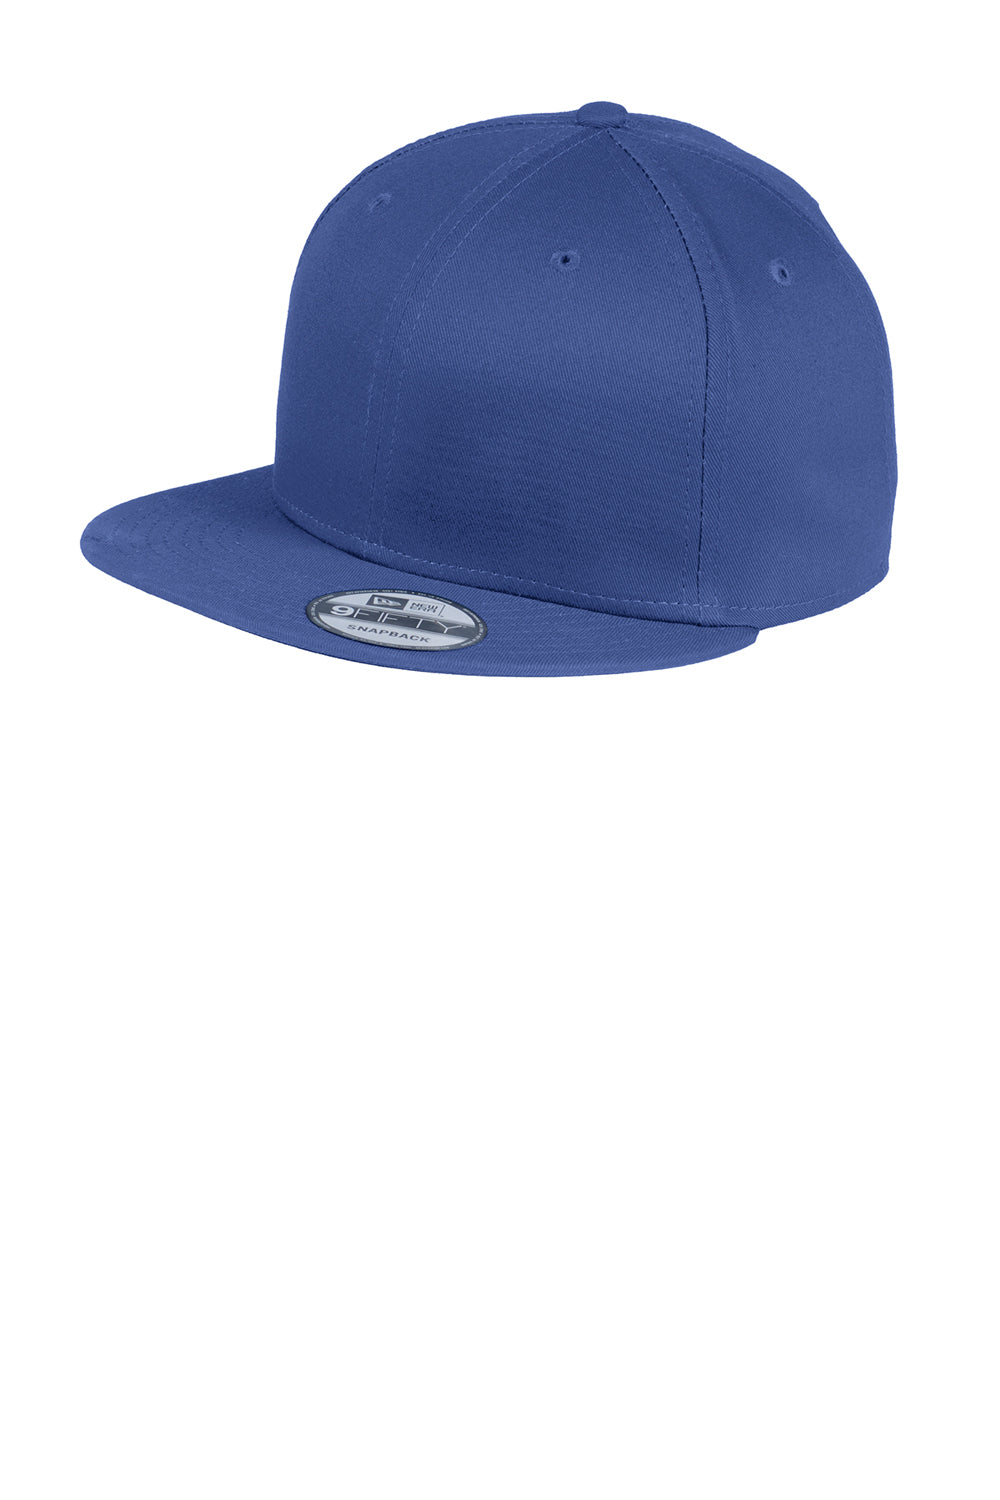 New Era NE400 Mens Adjustable Hat Royal Blue Front